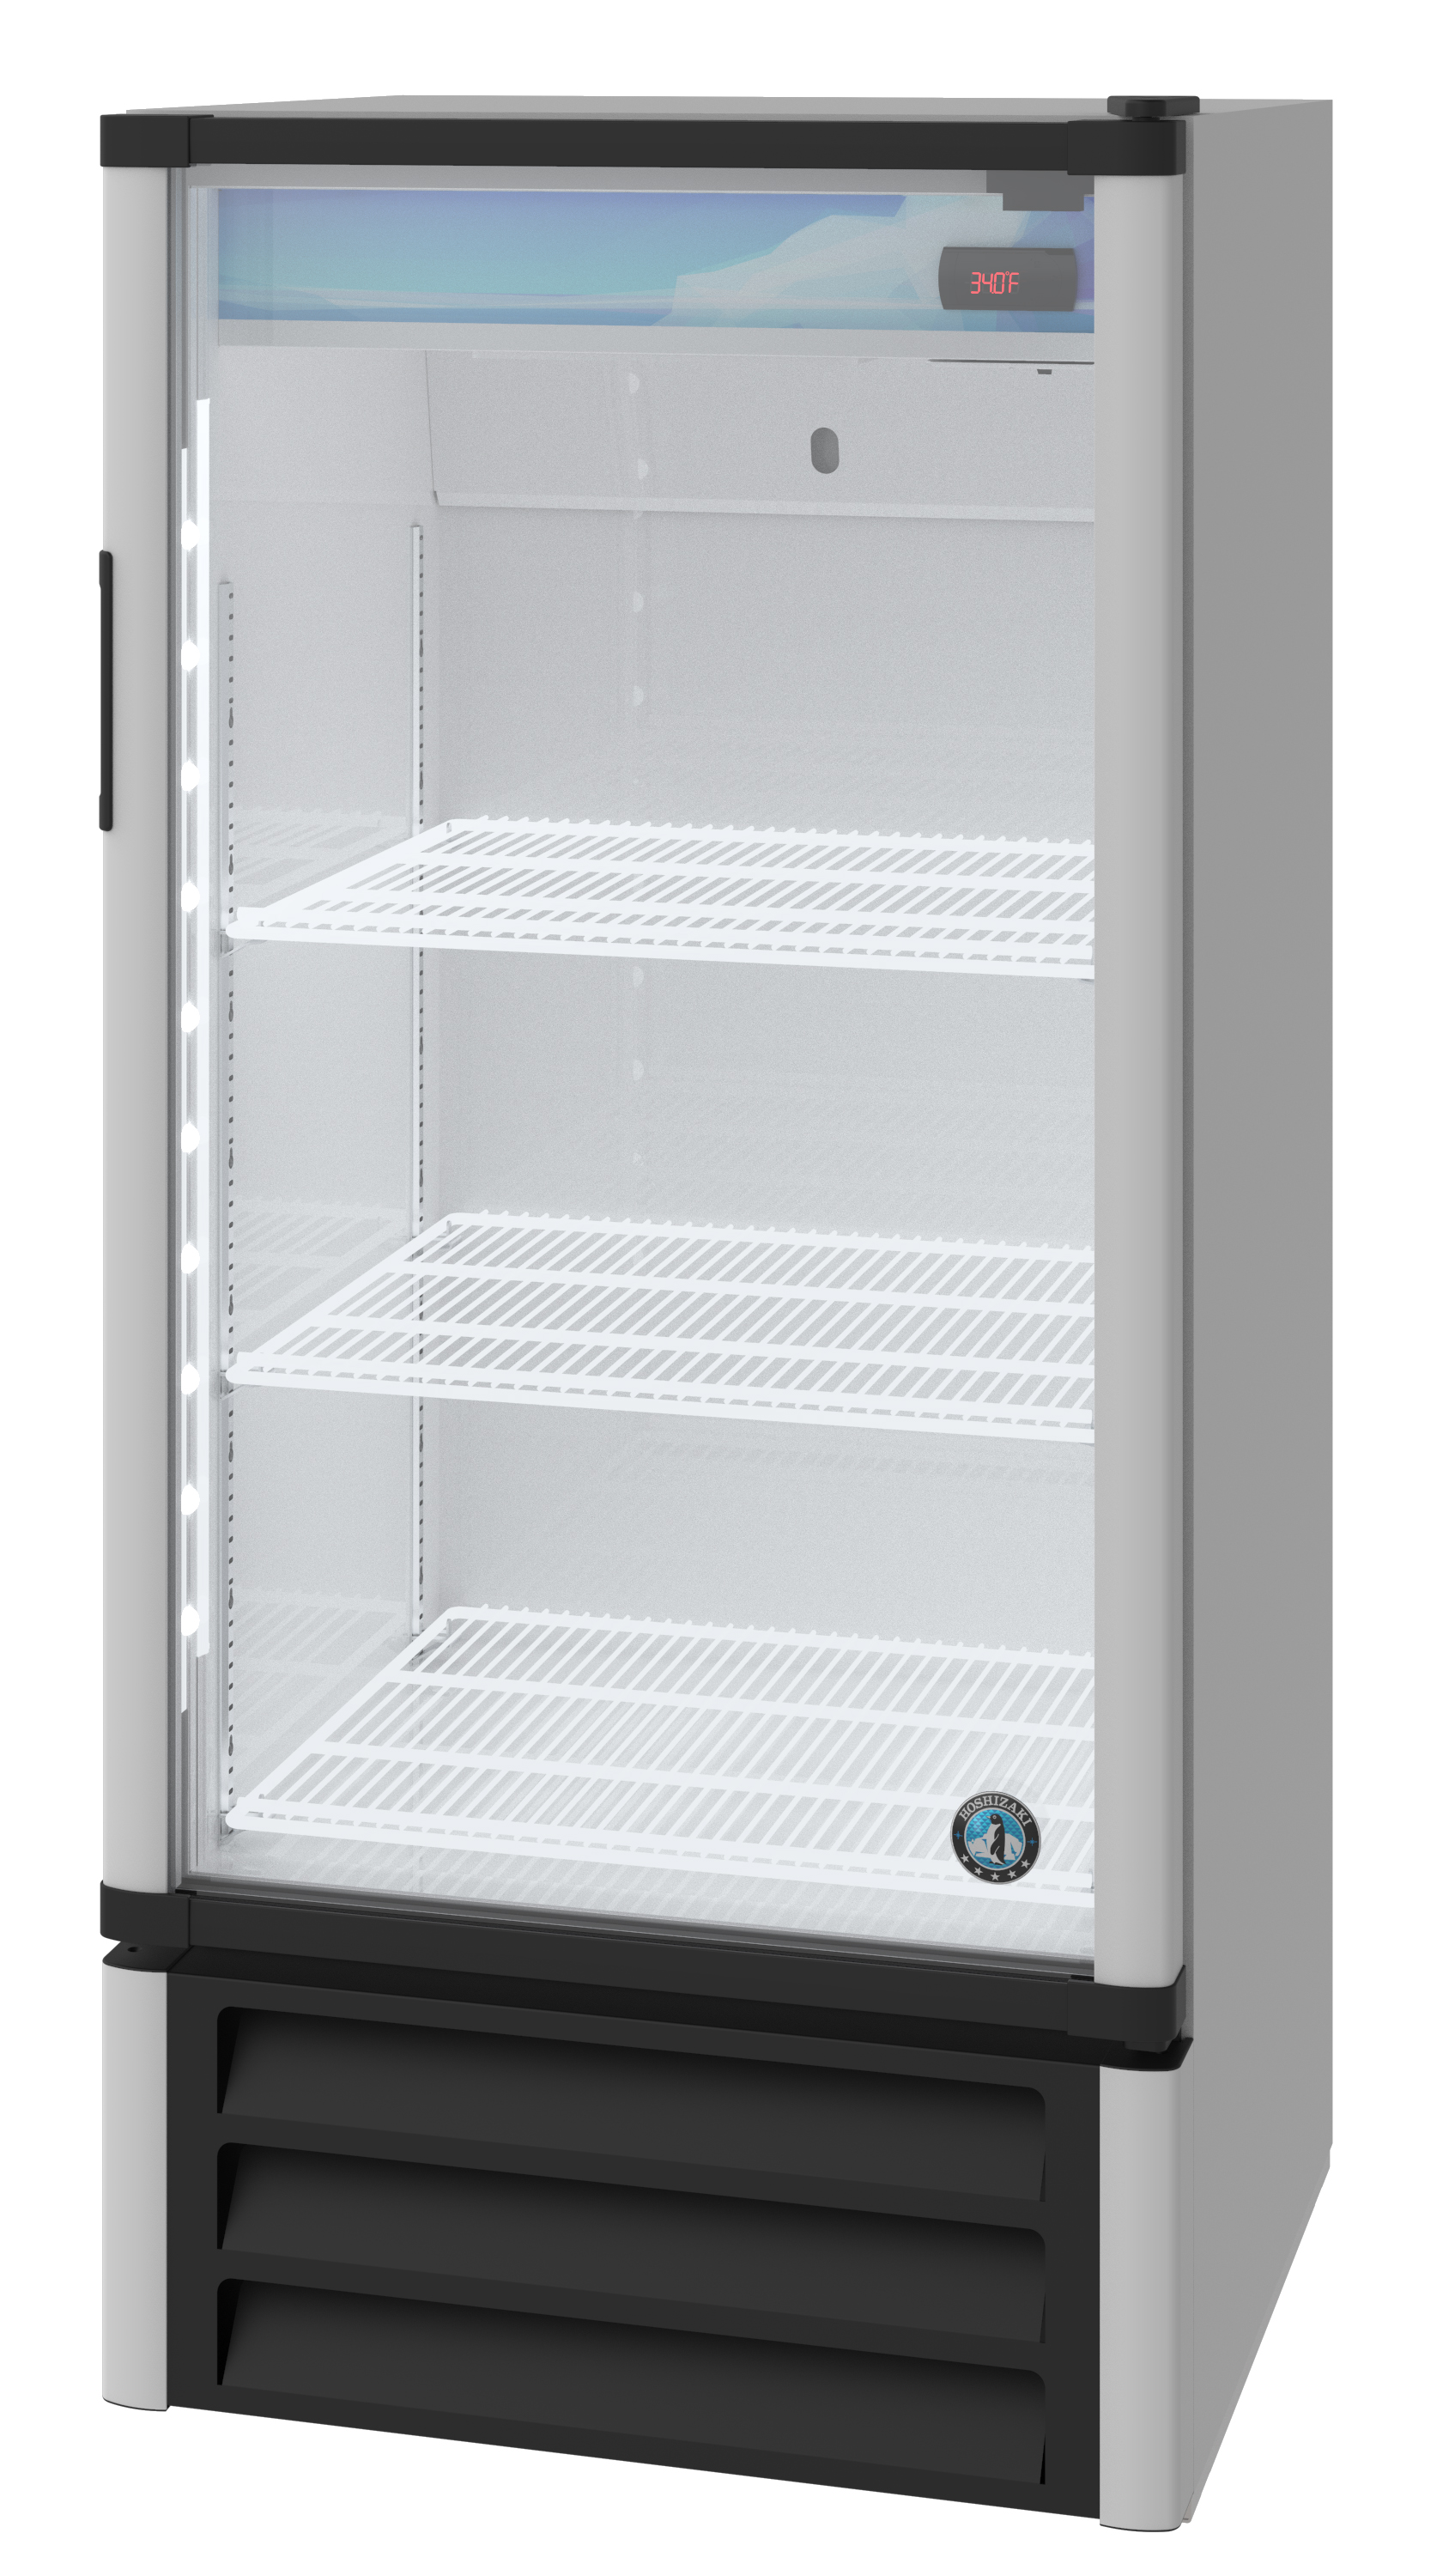 RM-10, Refrigerator, Single Section Glass Door Merchandiser